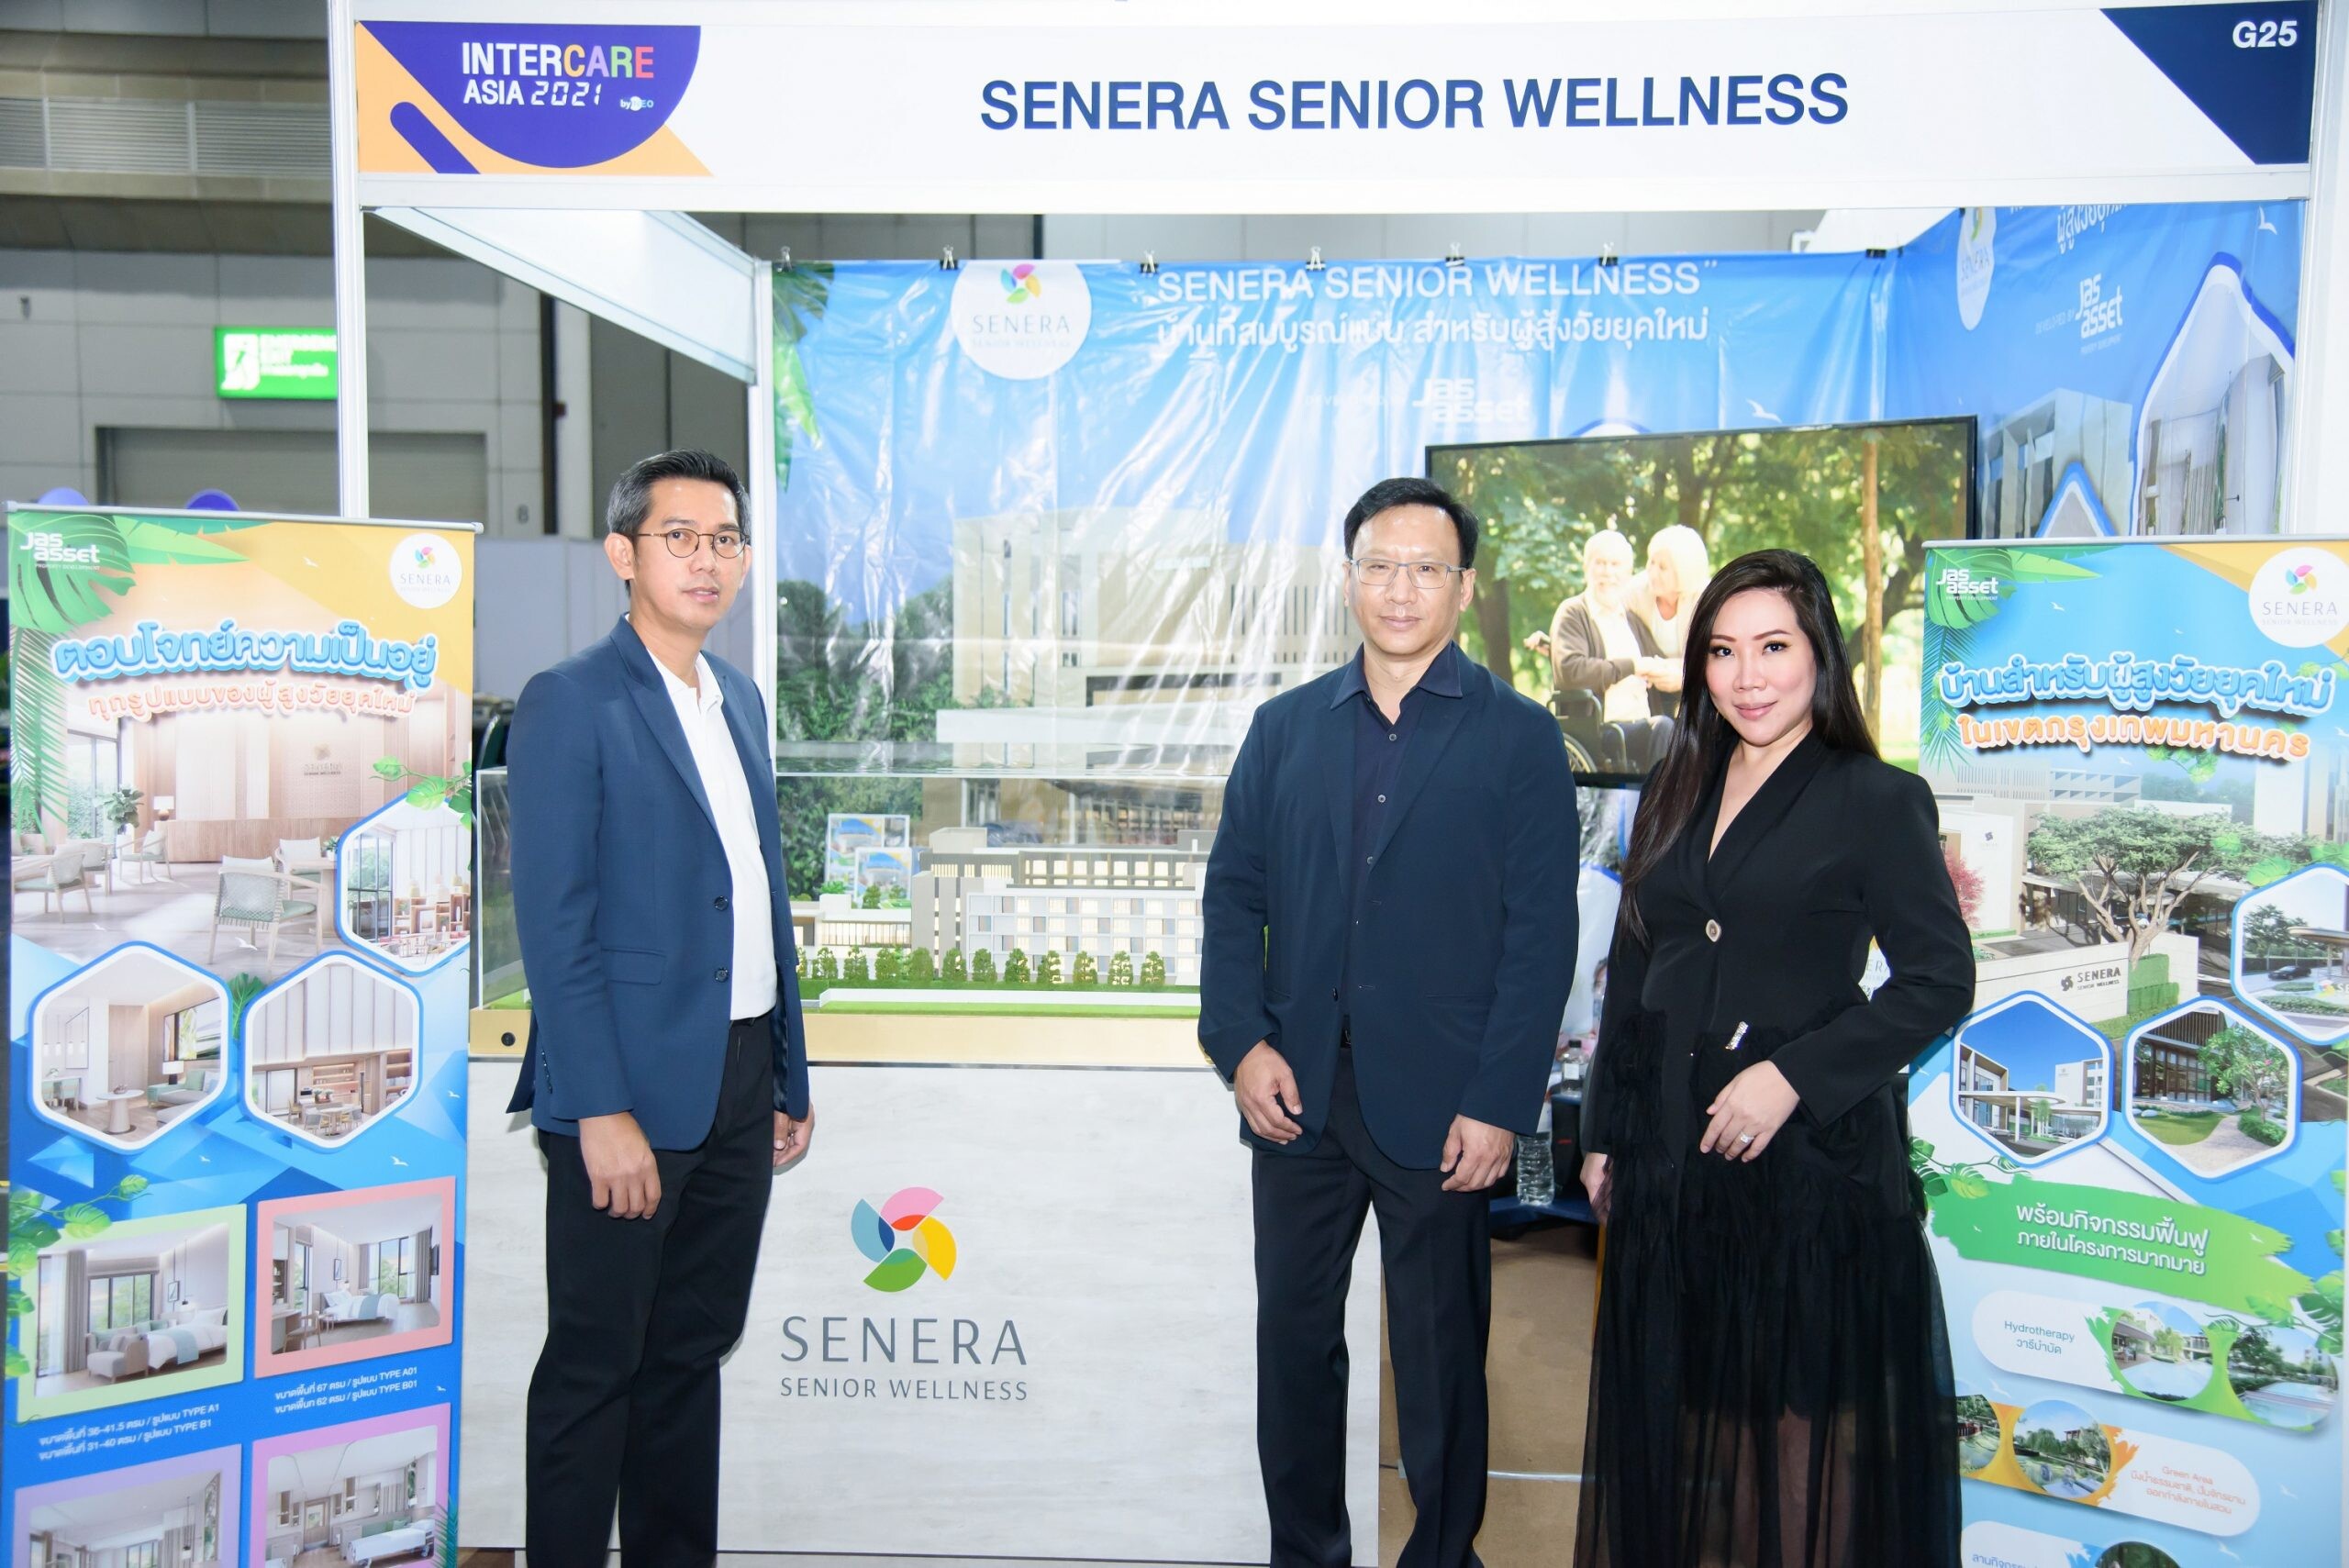 "เจเอเอส แอสเซ็ท" รับกระแส Aged Society เปิดตัว 'SENERA SENIOR WELLNESS' ในงาน InterCare Asia 2021